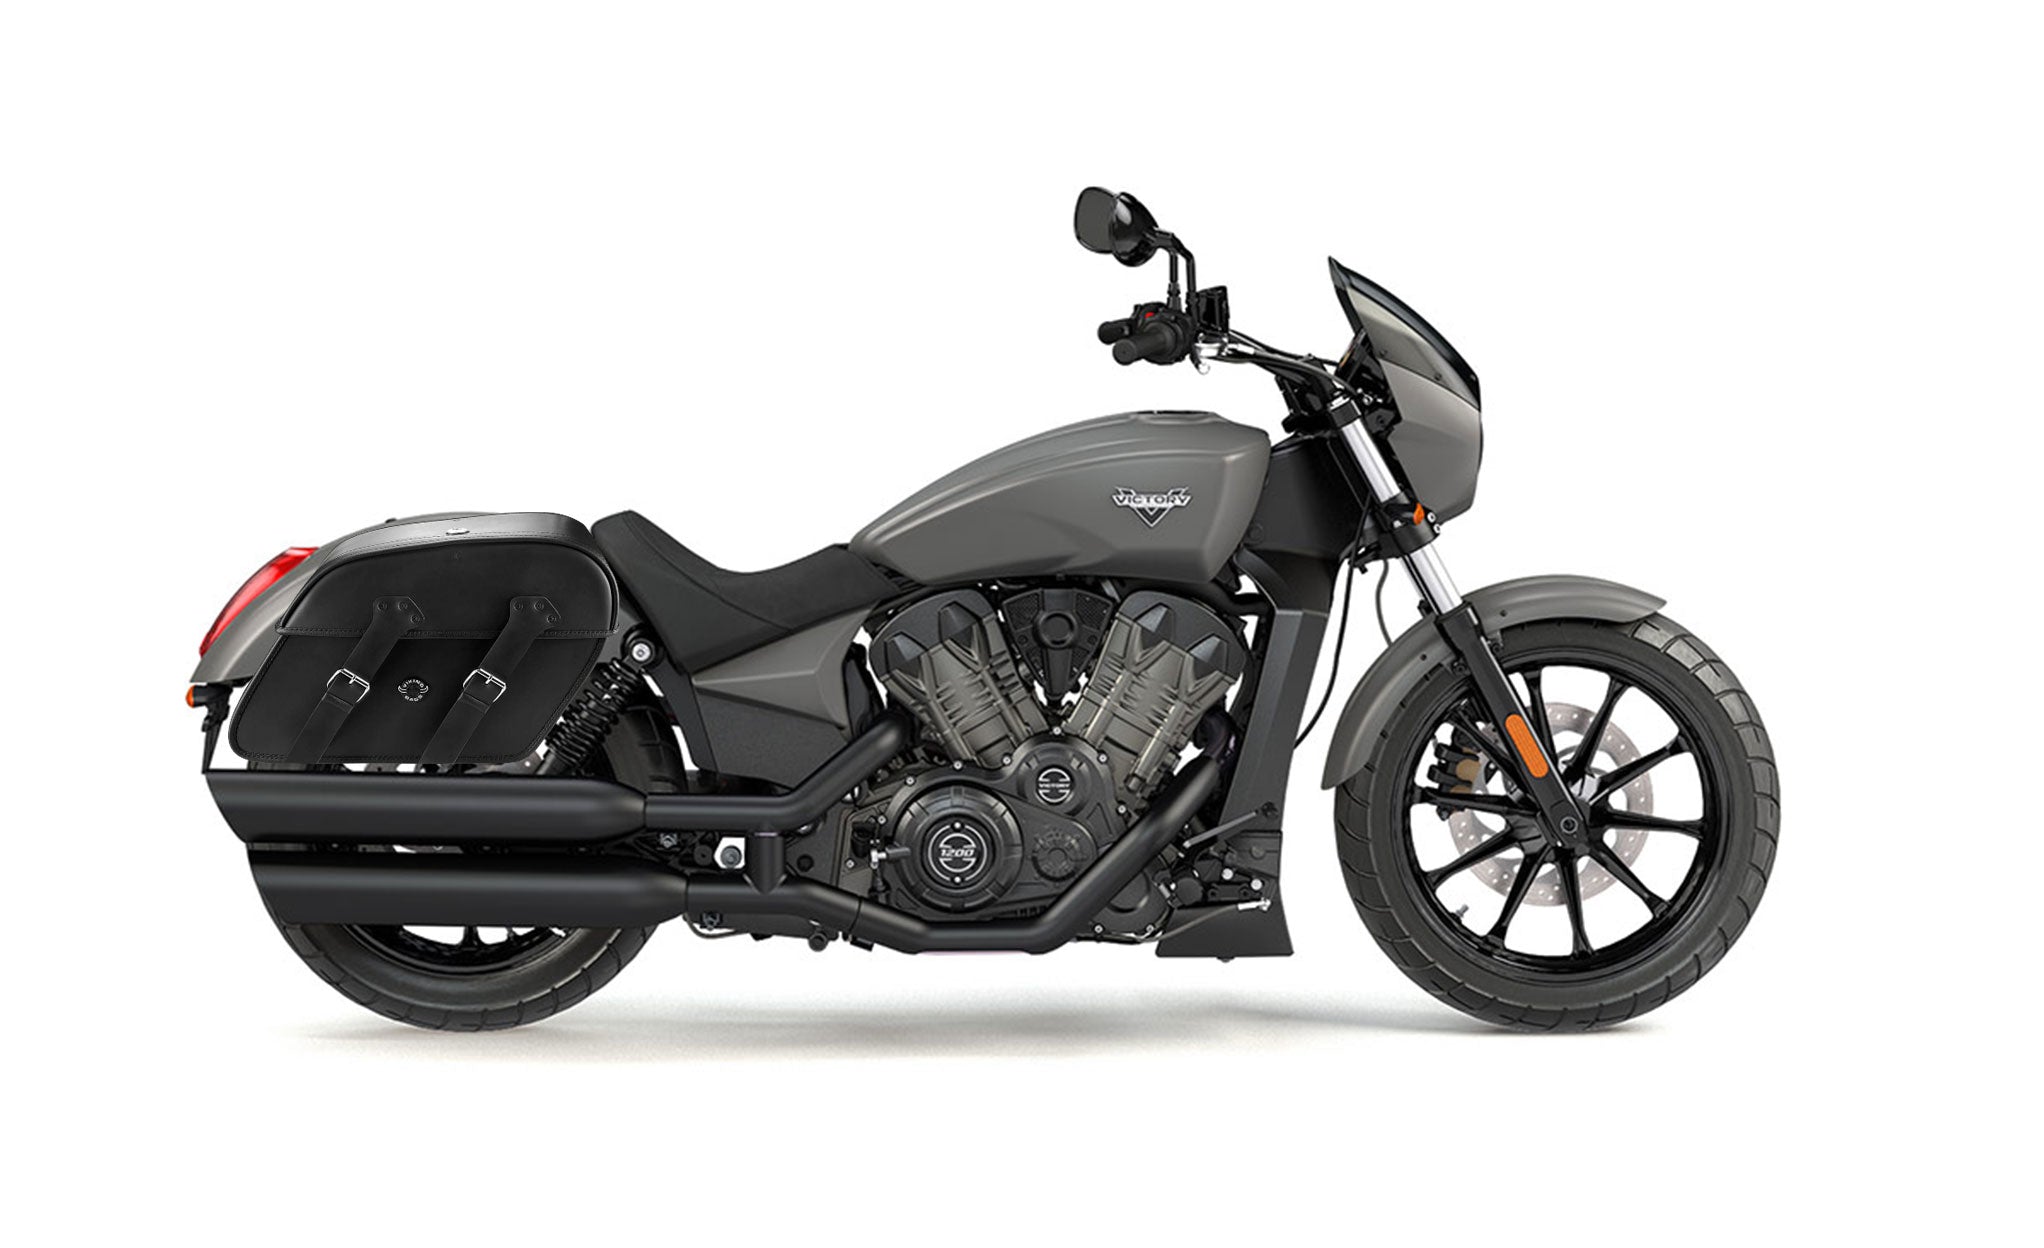 Viking Raven Extra Large Victory Octane Leather Motorcycle Saddlebags on Bike Photo @expand